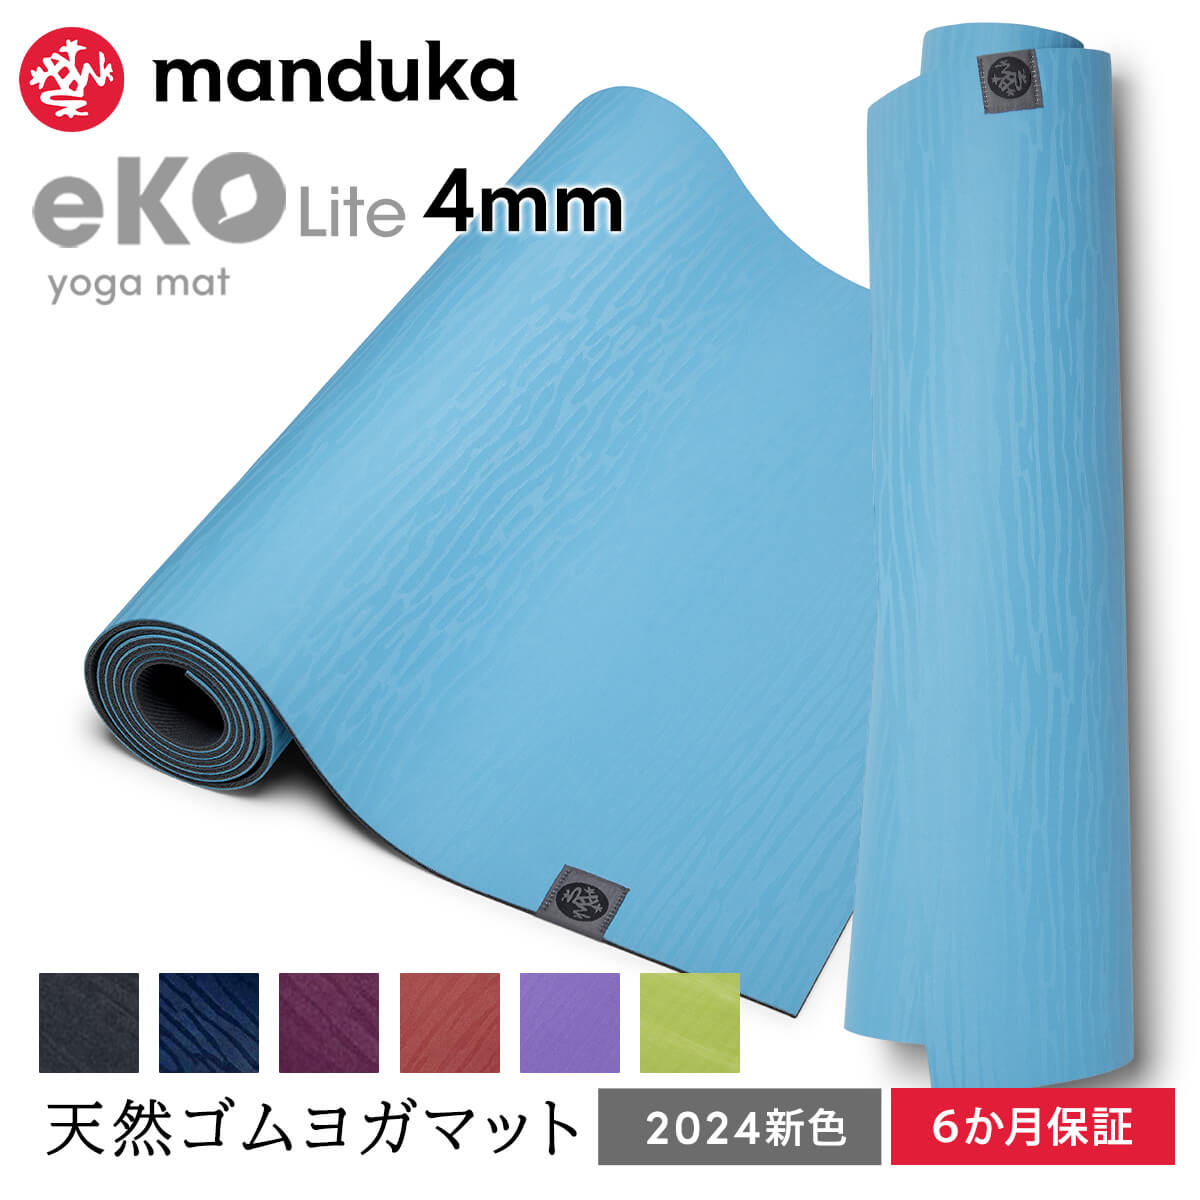 マンドゥカ Manduka ヨガマット エコライト 4mm 《6か月保証》日本正規品 | eKO Lite yoga mat 天然ゴム 筋トレ トレ…